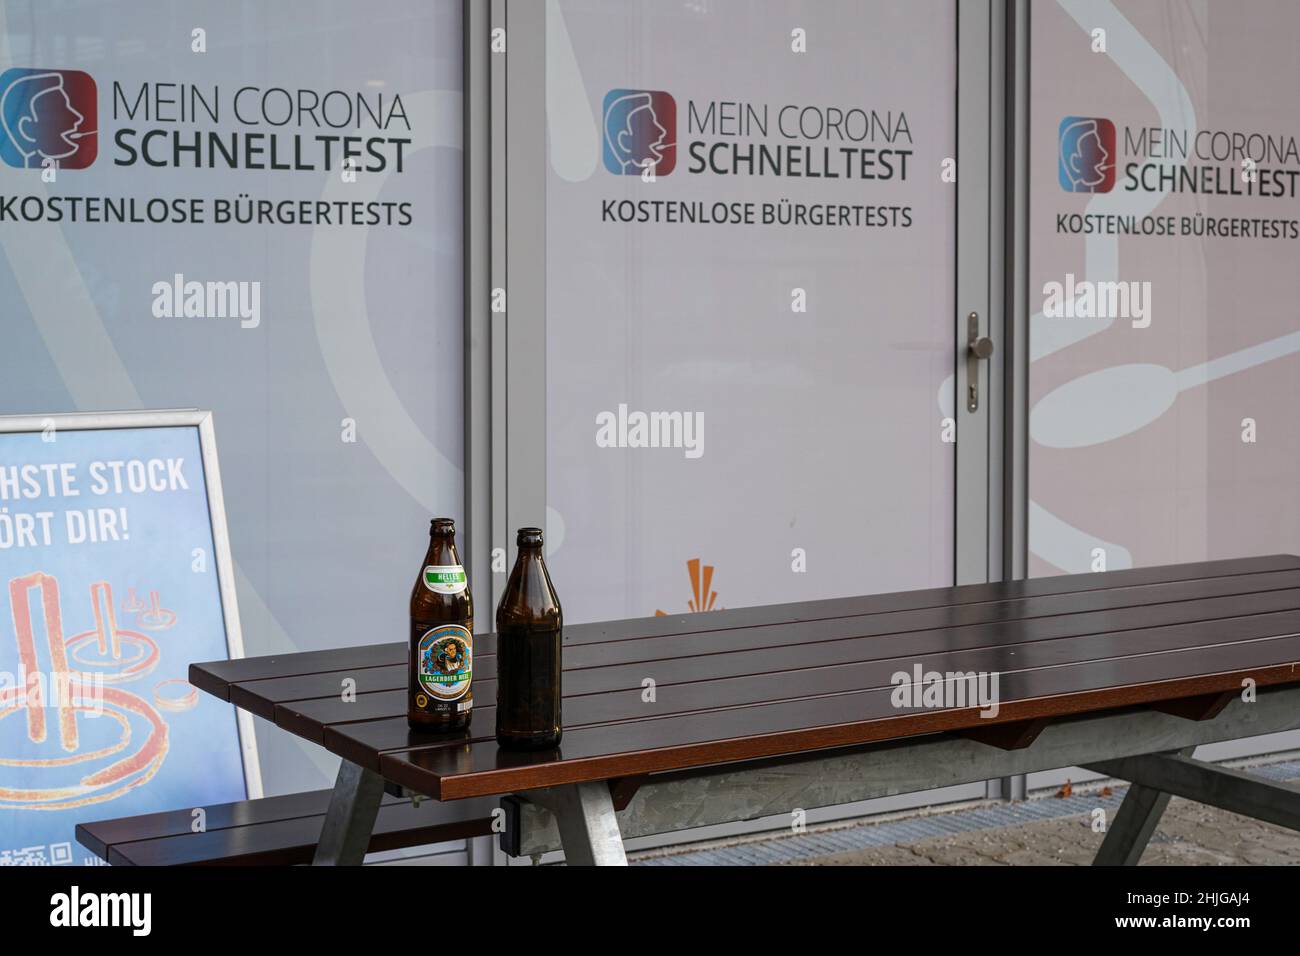 Vor der Glasscheibe eines Corona Schnelltestzentrums - Citizen Tests - befindet sich ein Holztisch und zwei Bänke. Auf dem Tisch stehen zwei leere Bierflaschen. Stockfoto